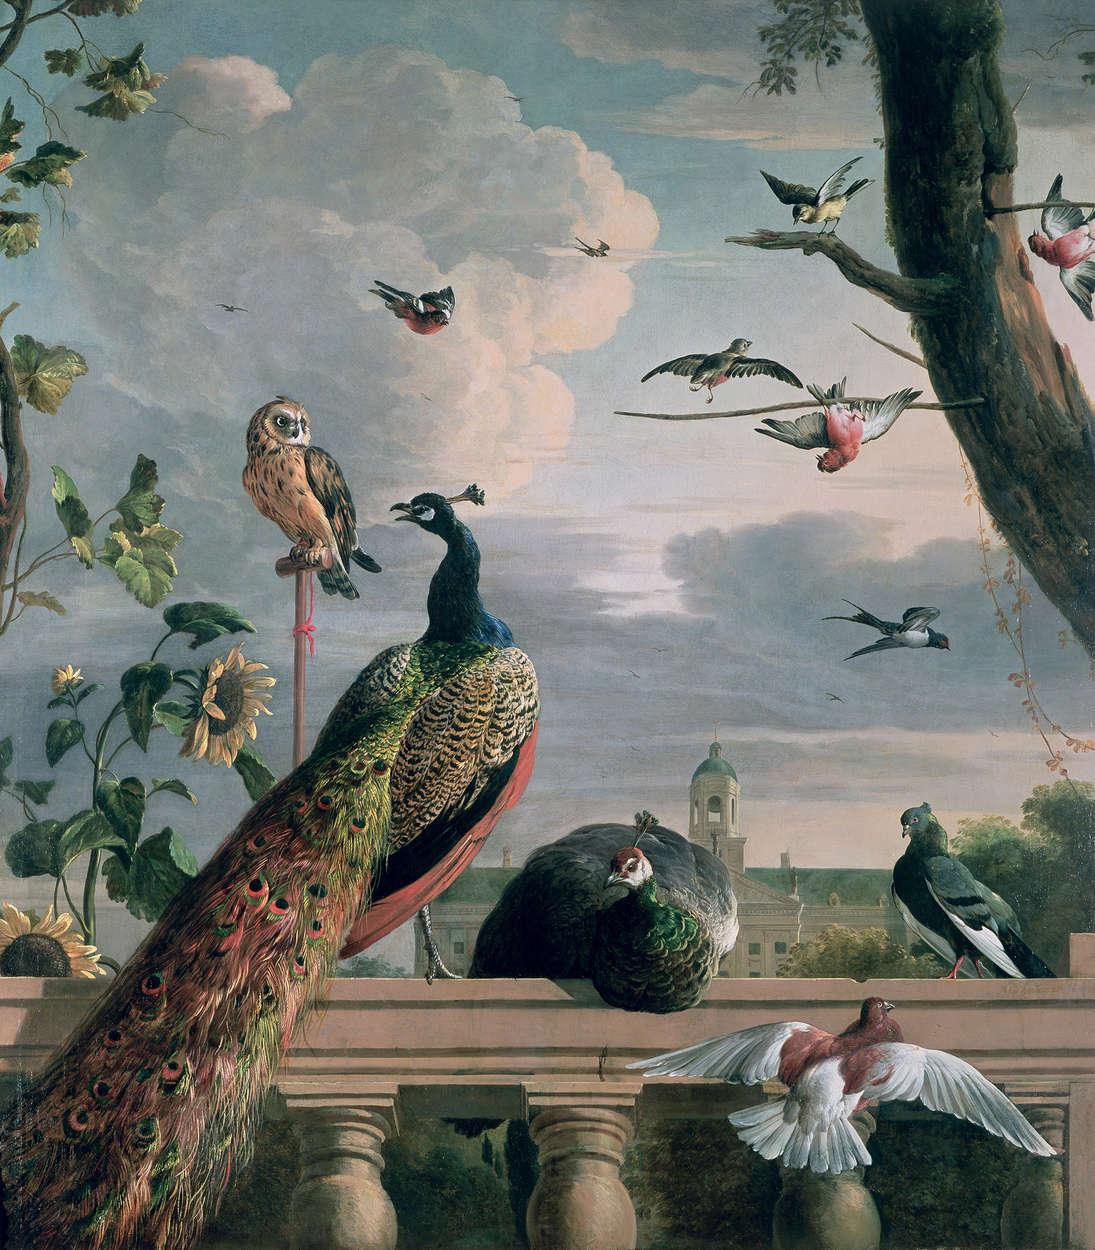             Muurschildering "Paleis Amsterdam met exotische vogels" door Melchoir de Hondecoeter
        